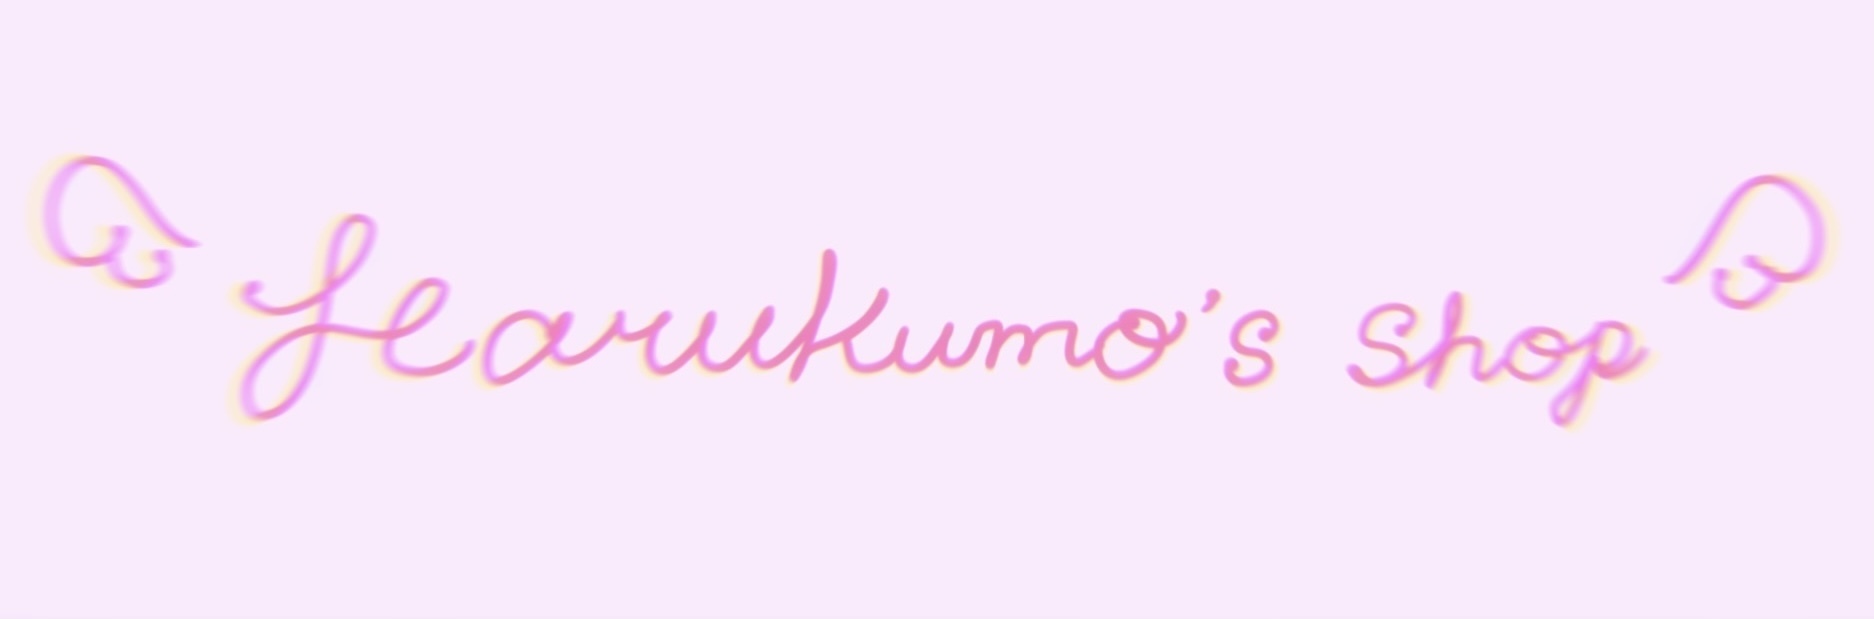 Harukumo's shop